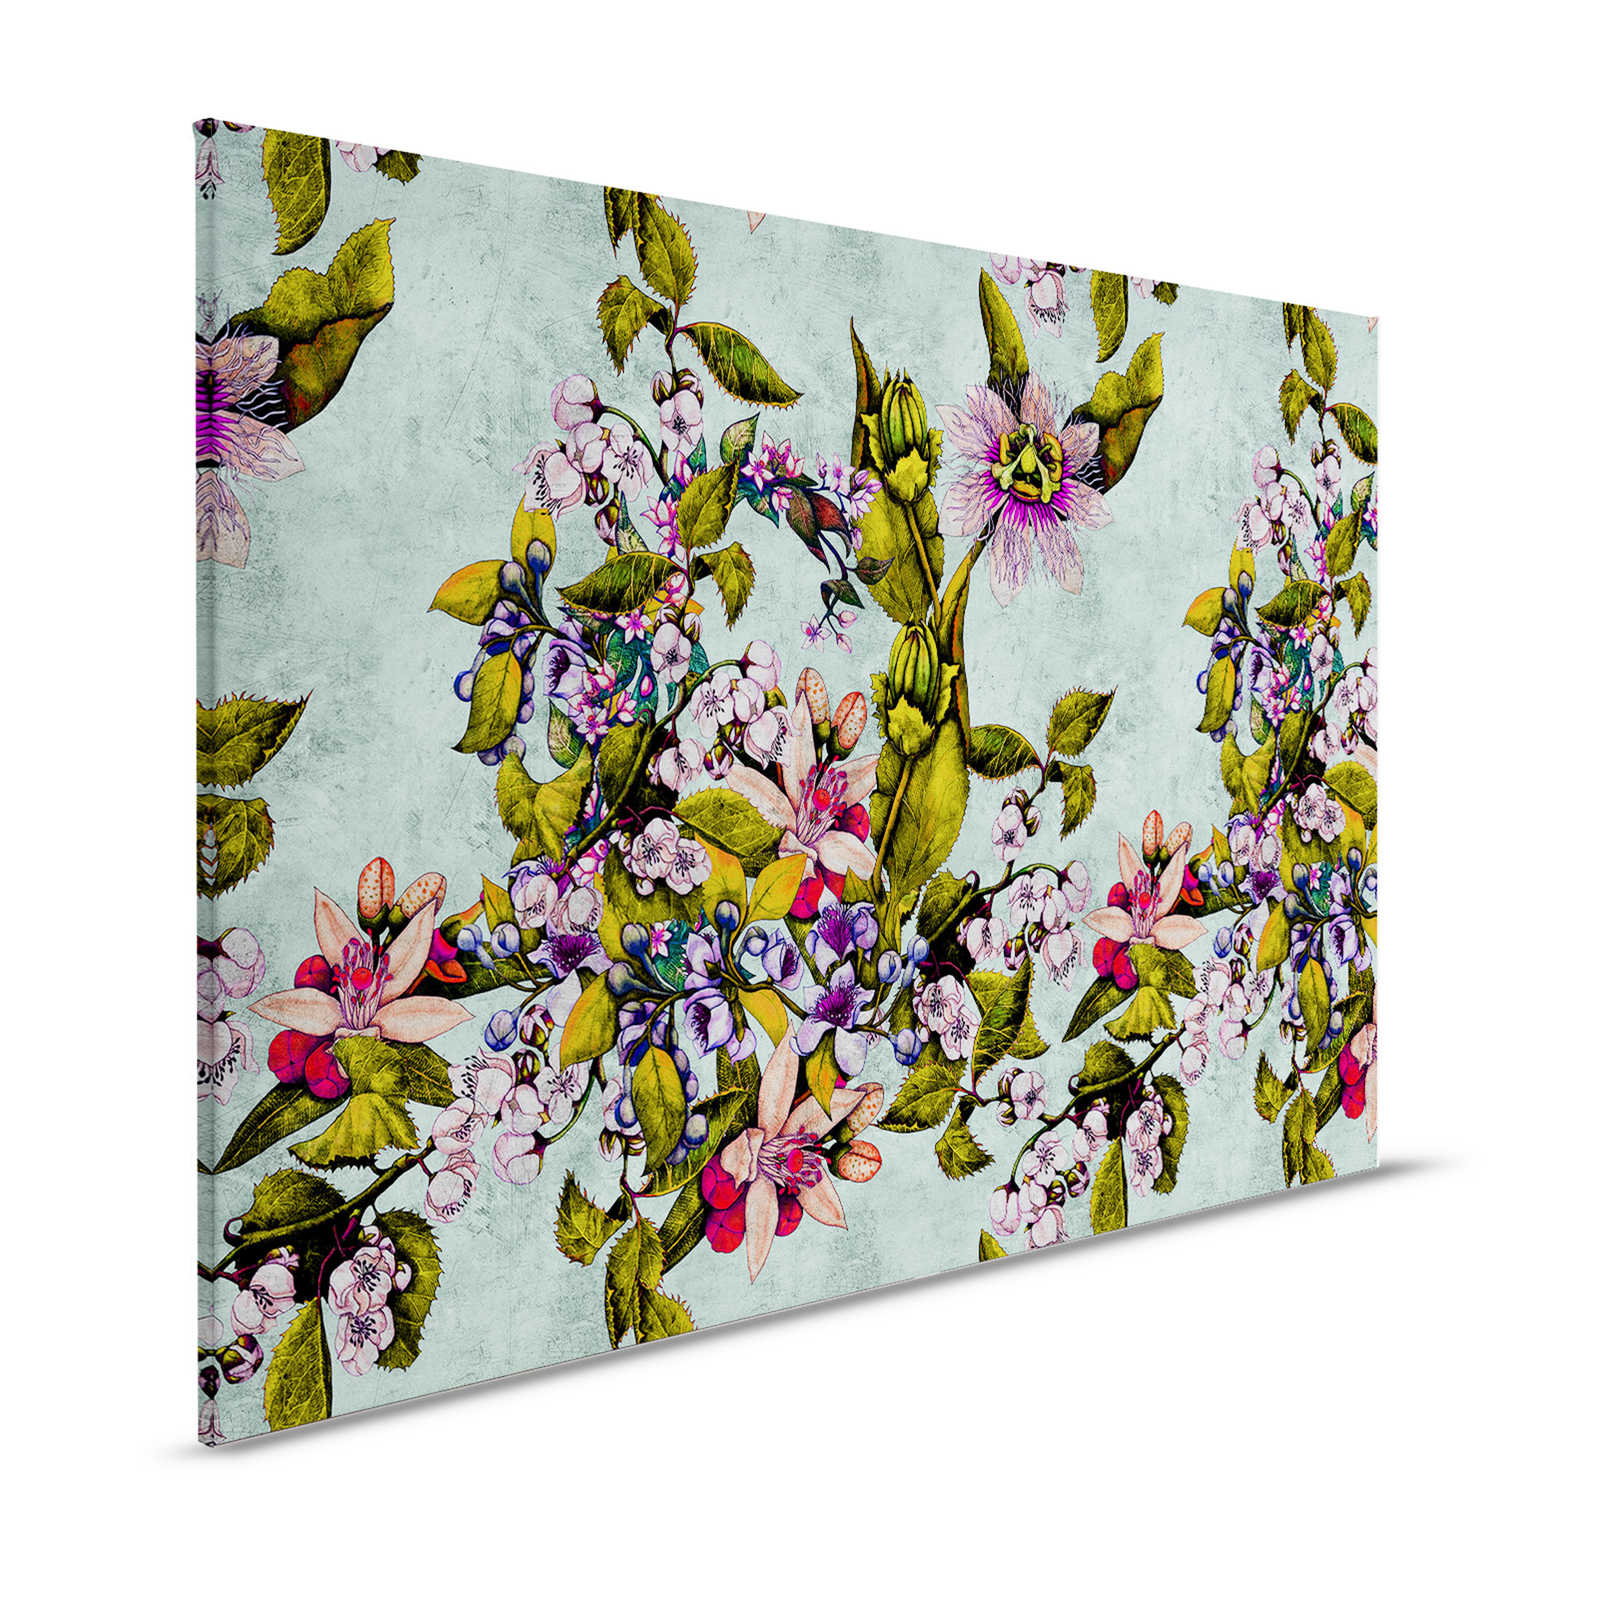 Tropical Passion 2 - Quadro su tela con fiori e boccioli - 1,20 m x 0,80 m
